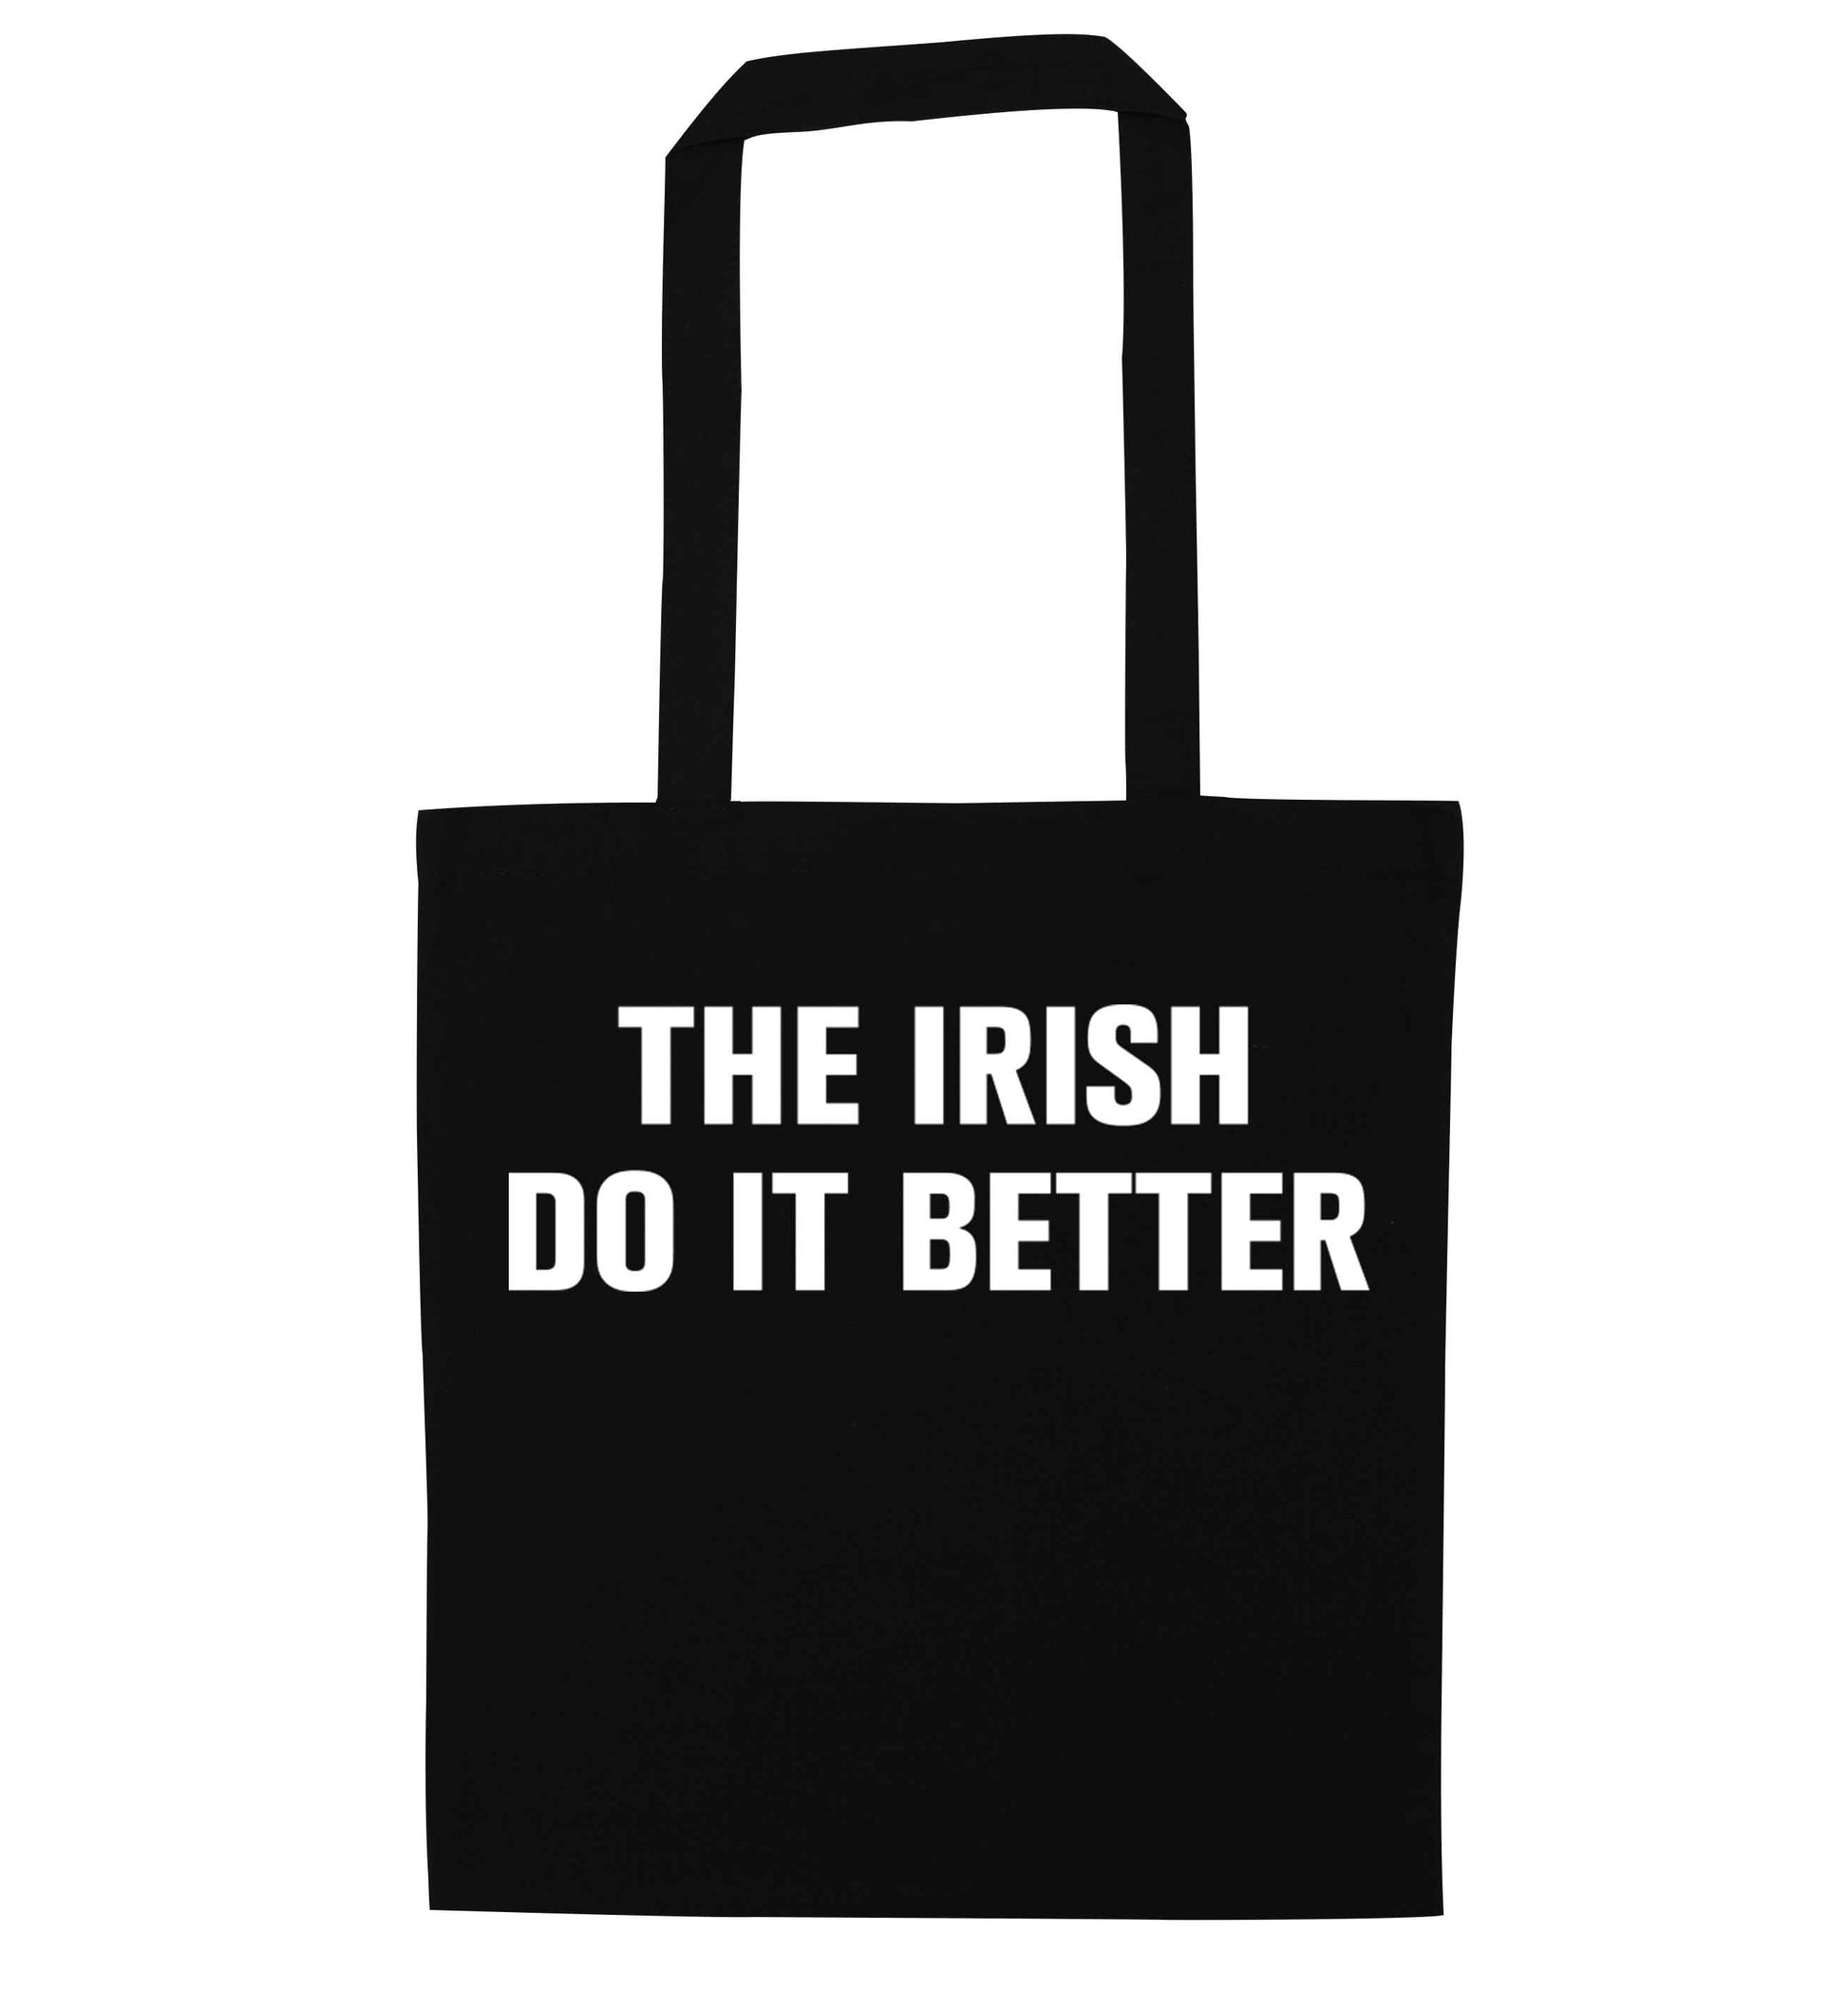 The Irish do it better black tote bag